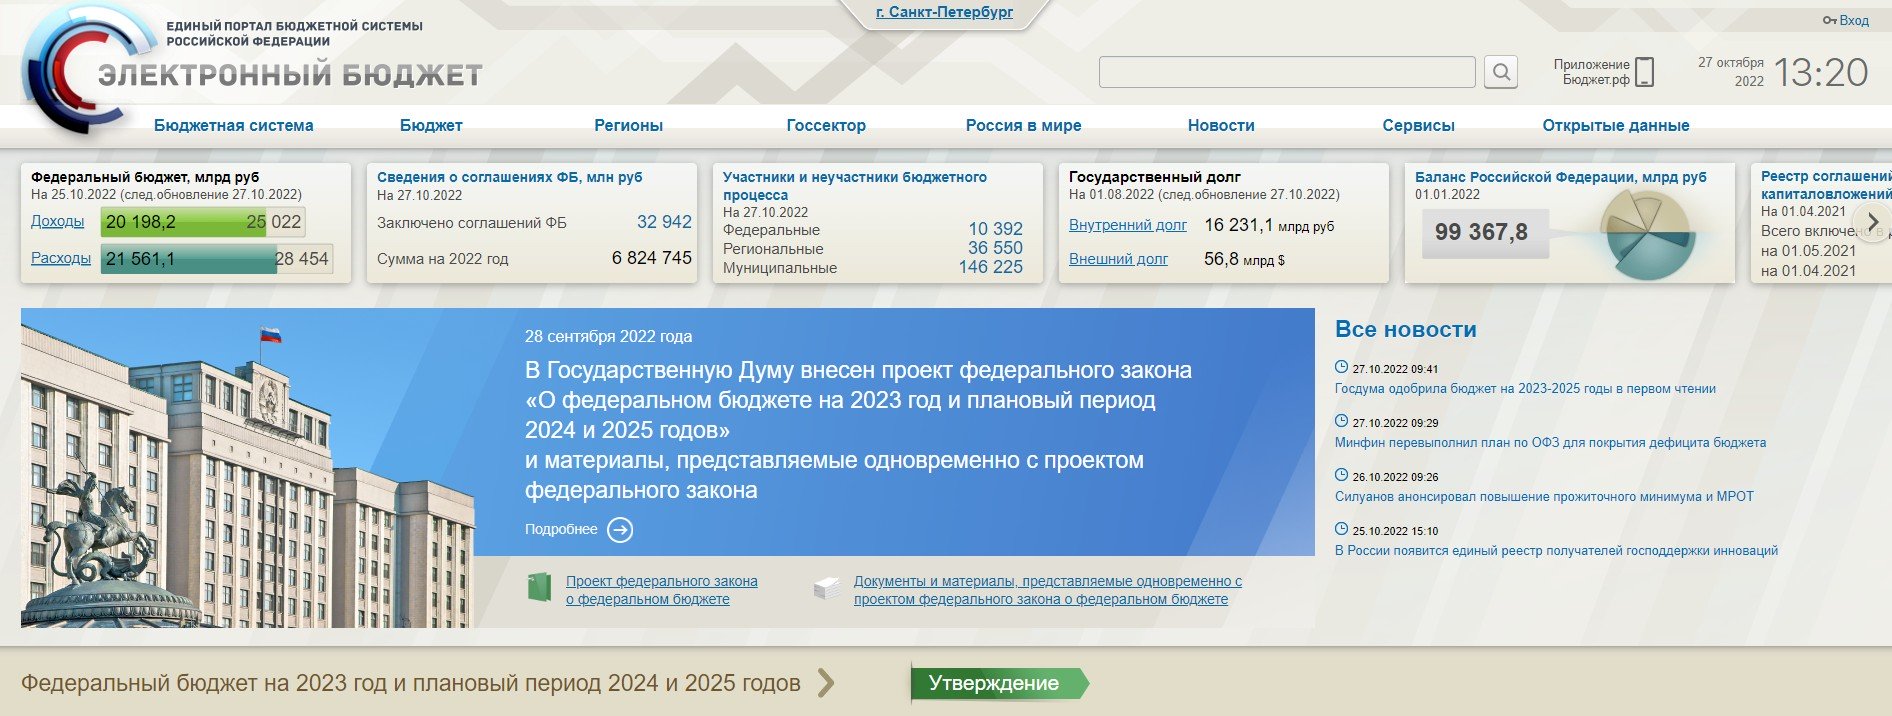 Официальный сайт бюджет гов ру